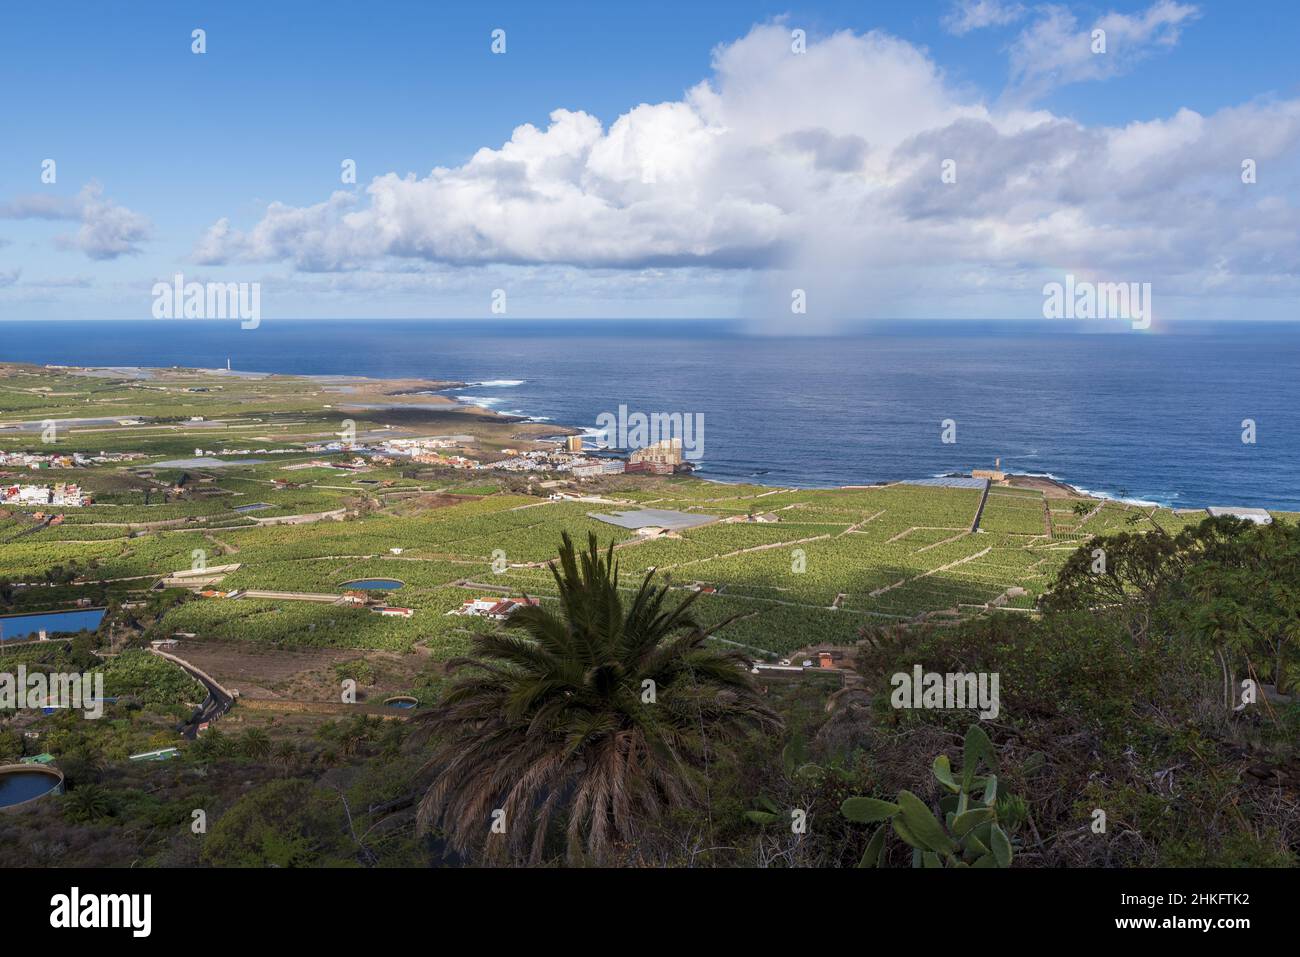 Espagne, îles Canaries, Ténérife, Los Silos, arc-en-ciel au-dessus de l'océan Atlantique Banque D'Images